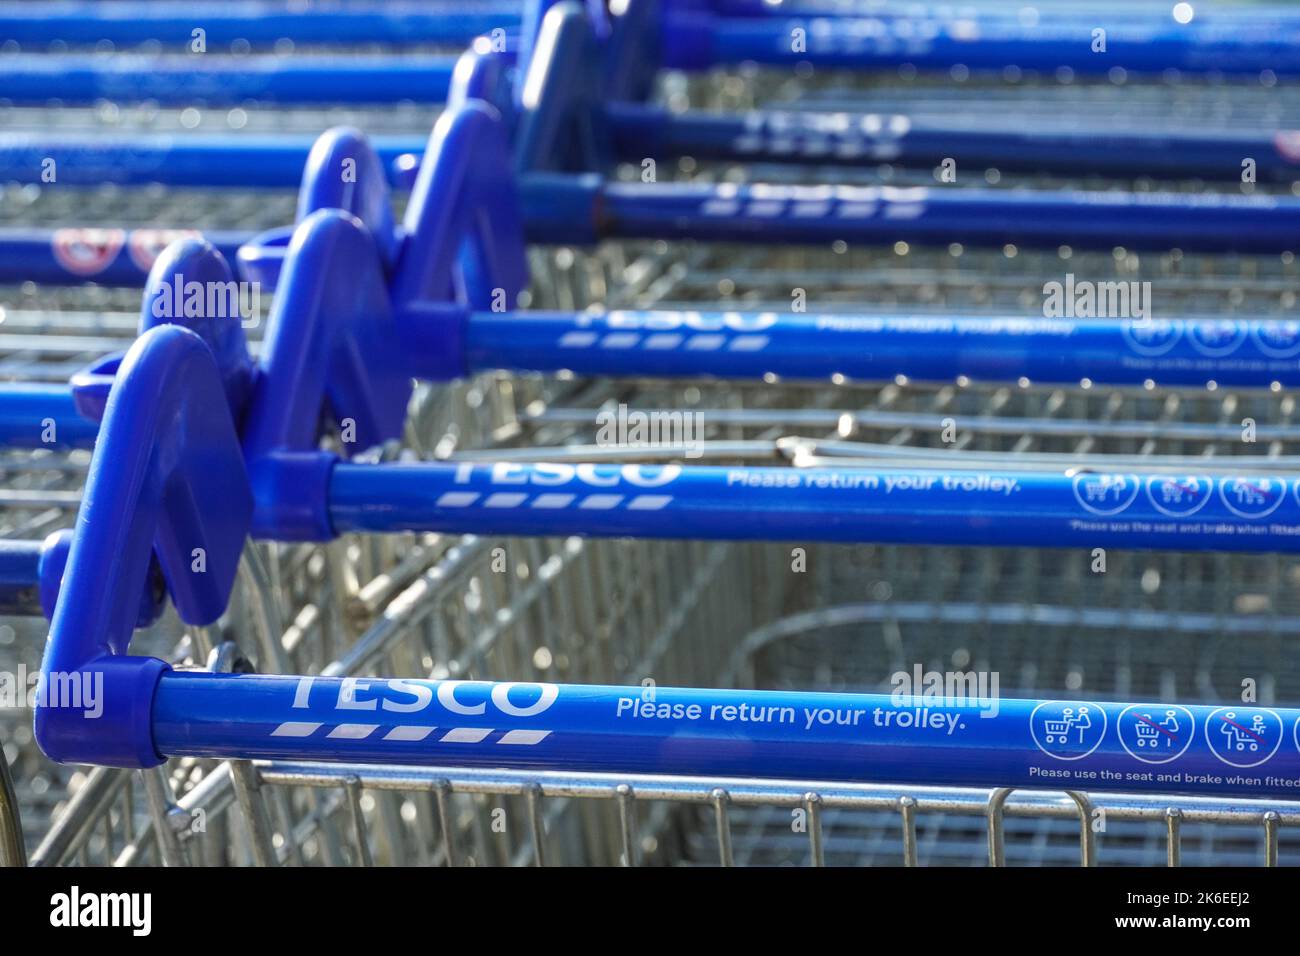 Reihen von Tesco Trolleys vor dem Supermarkt, London, England, Großbritannien, Großbritannien Stockfoto